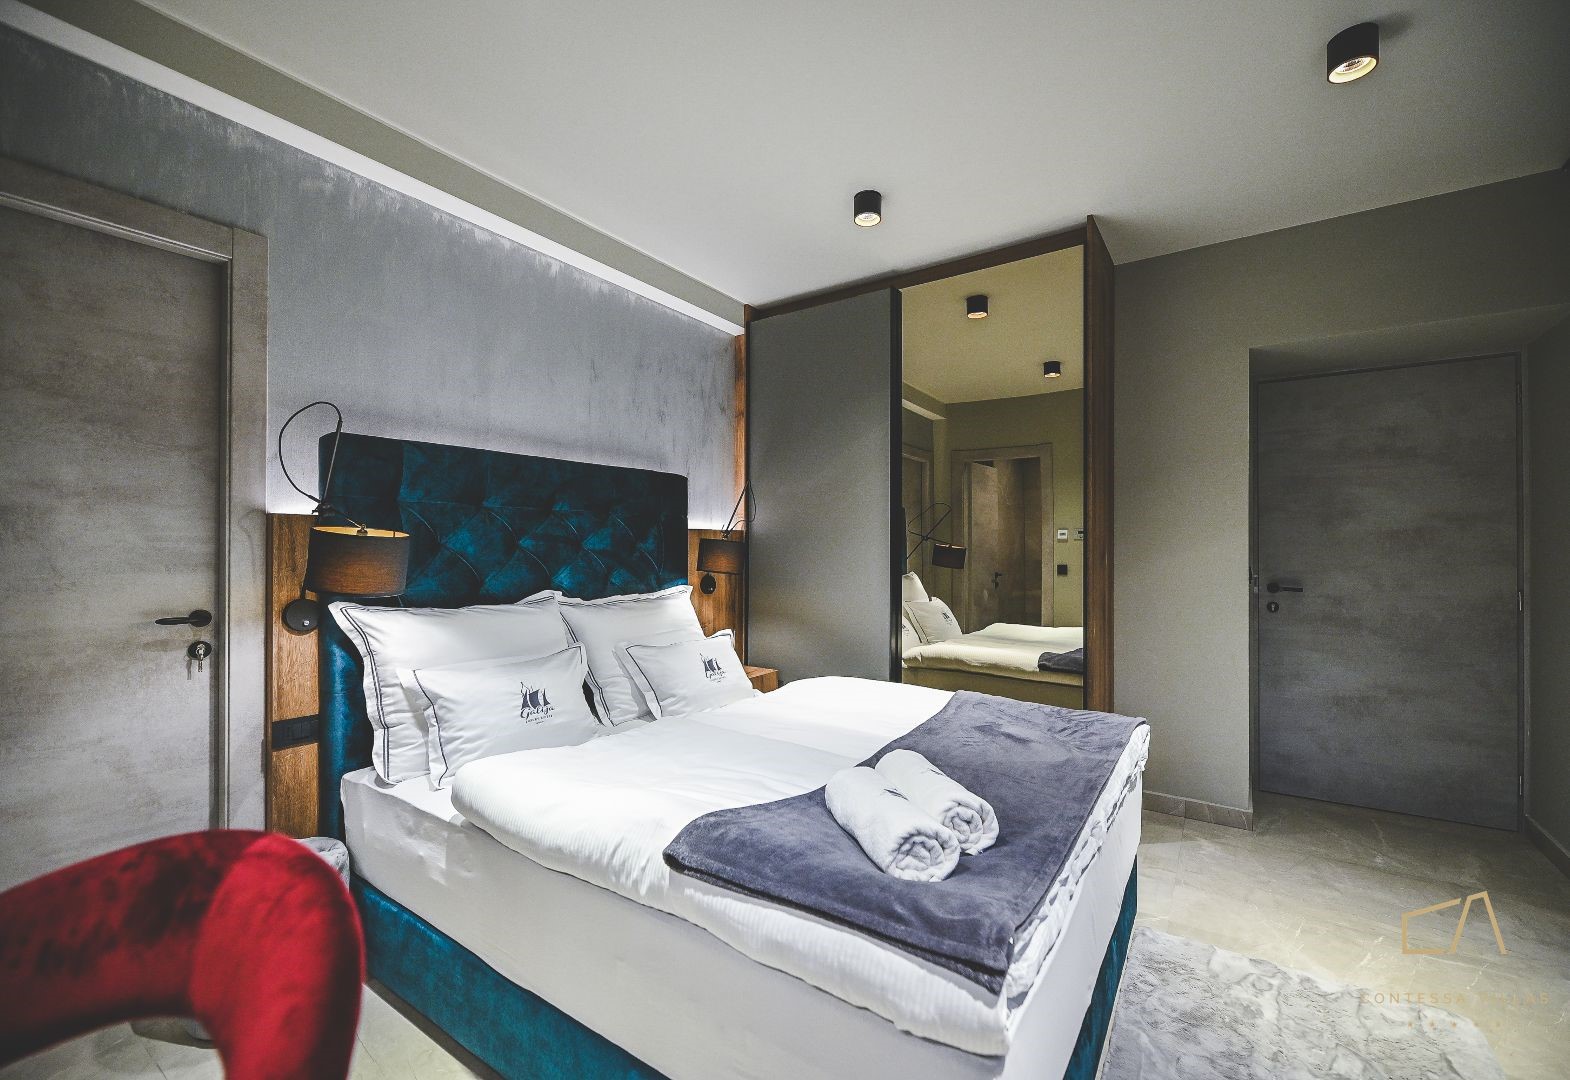 Galija Luxury Suites: luksuzni smještaj uređen u jedinstvenom stilu!